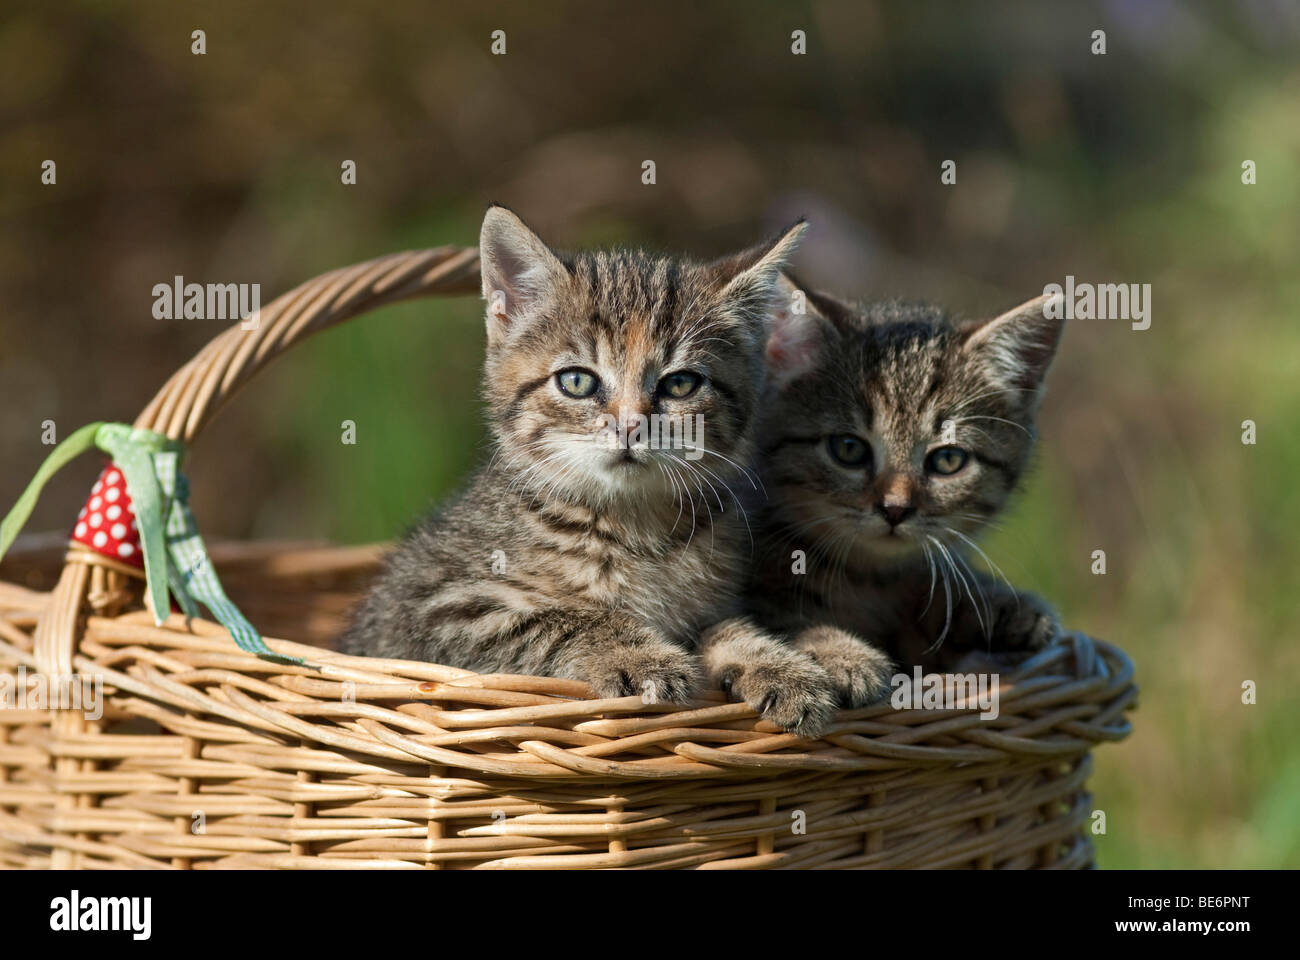 Deux chats domestiques, les chatons dans un panier en osier Banque D'Images